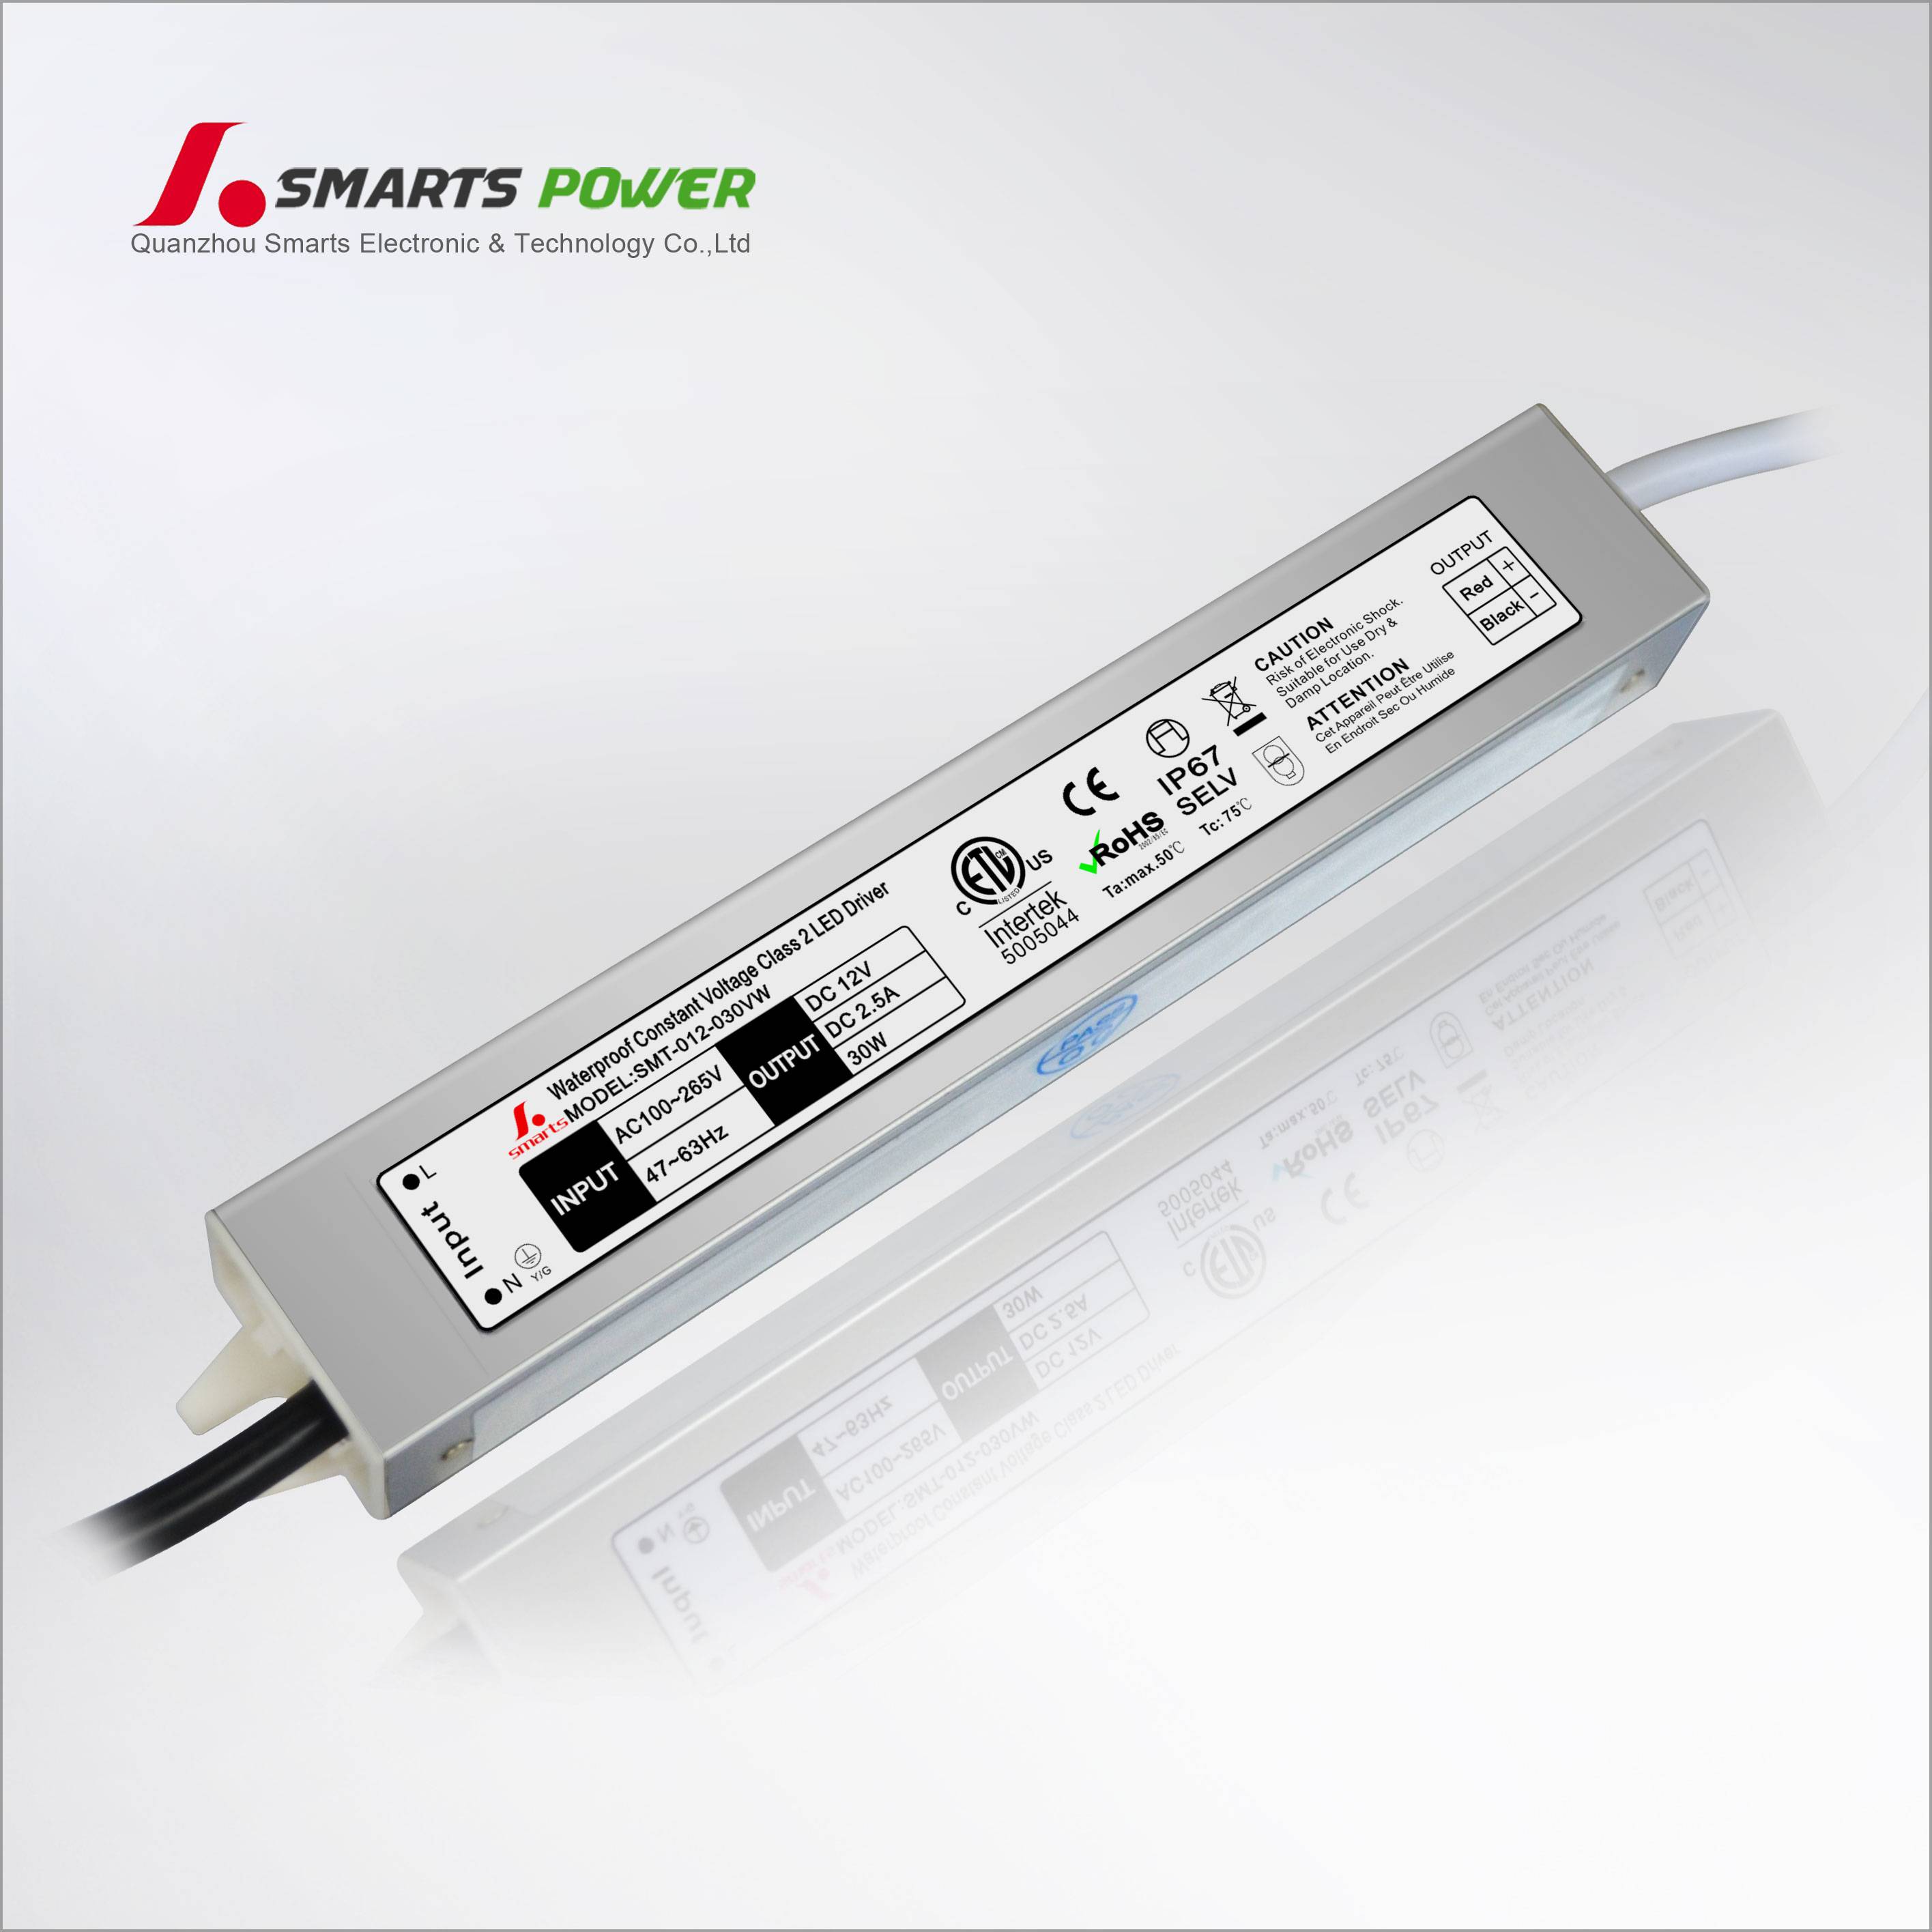 Constant-voltage LED Driver